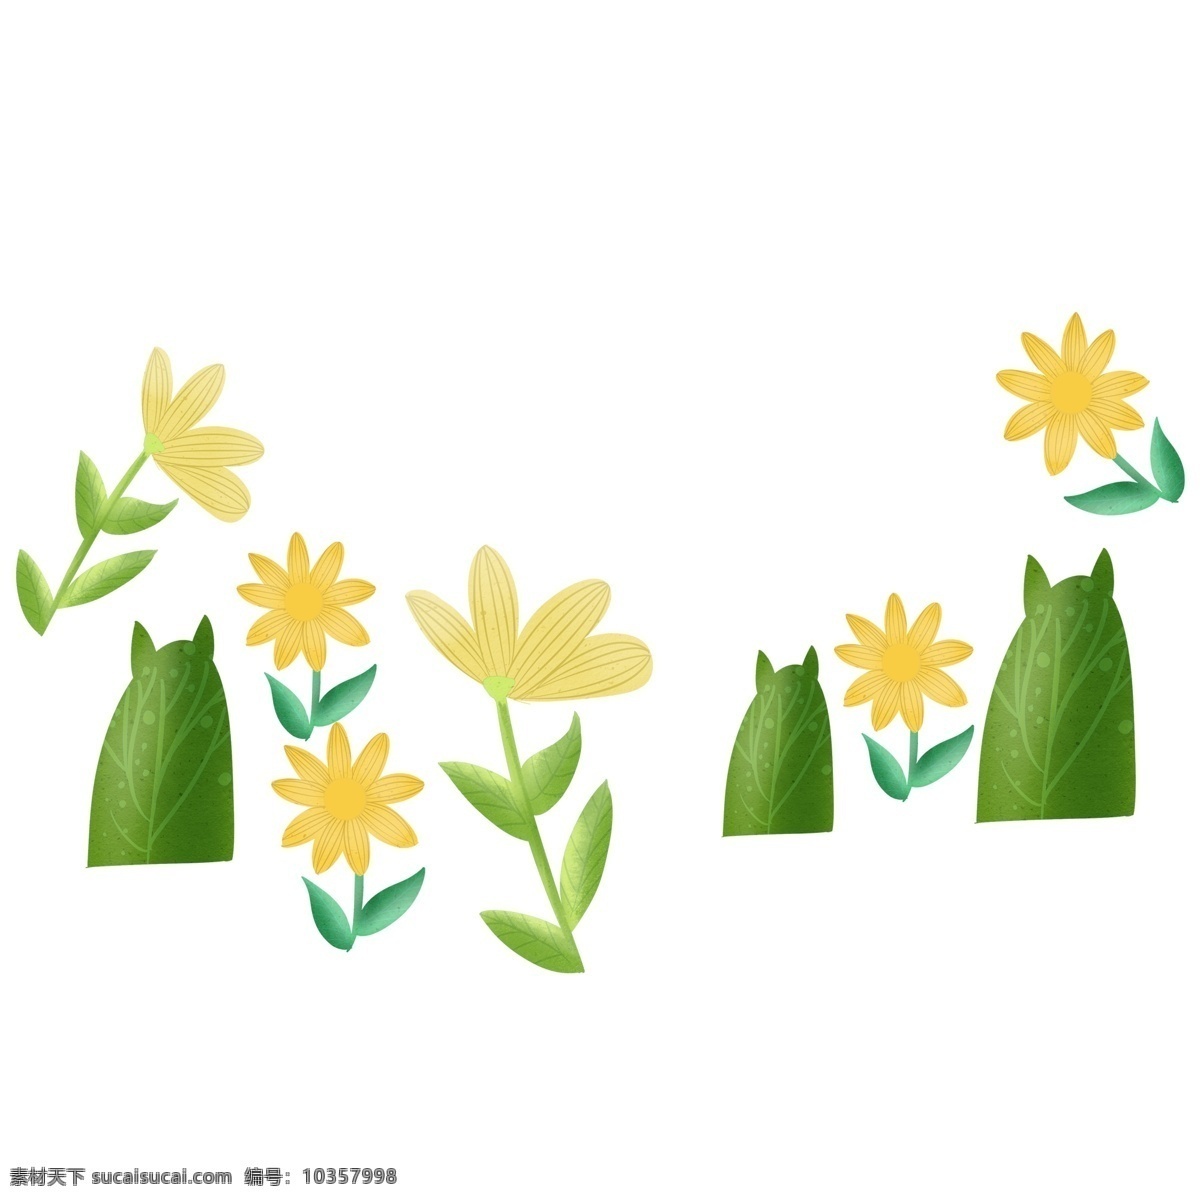 清新 黄色 植物 装饰 元素 装饰元素 手绘 明媚 阳光 小花 花朵 菊花